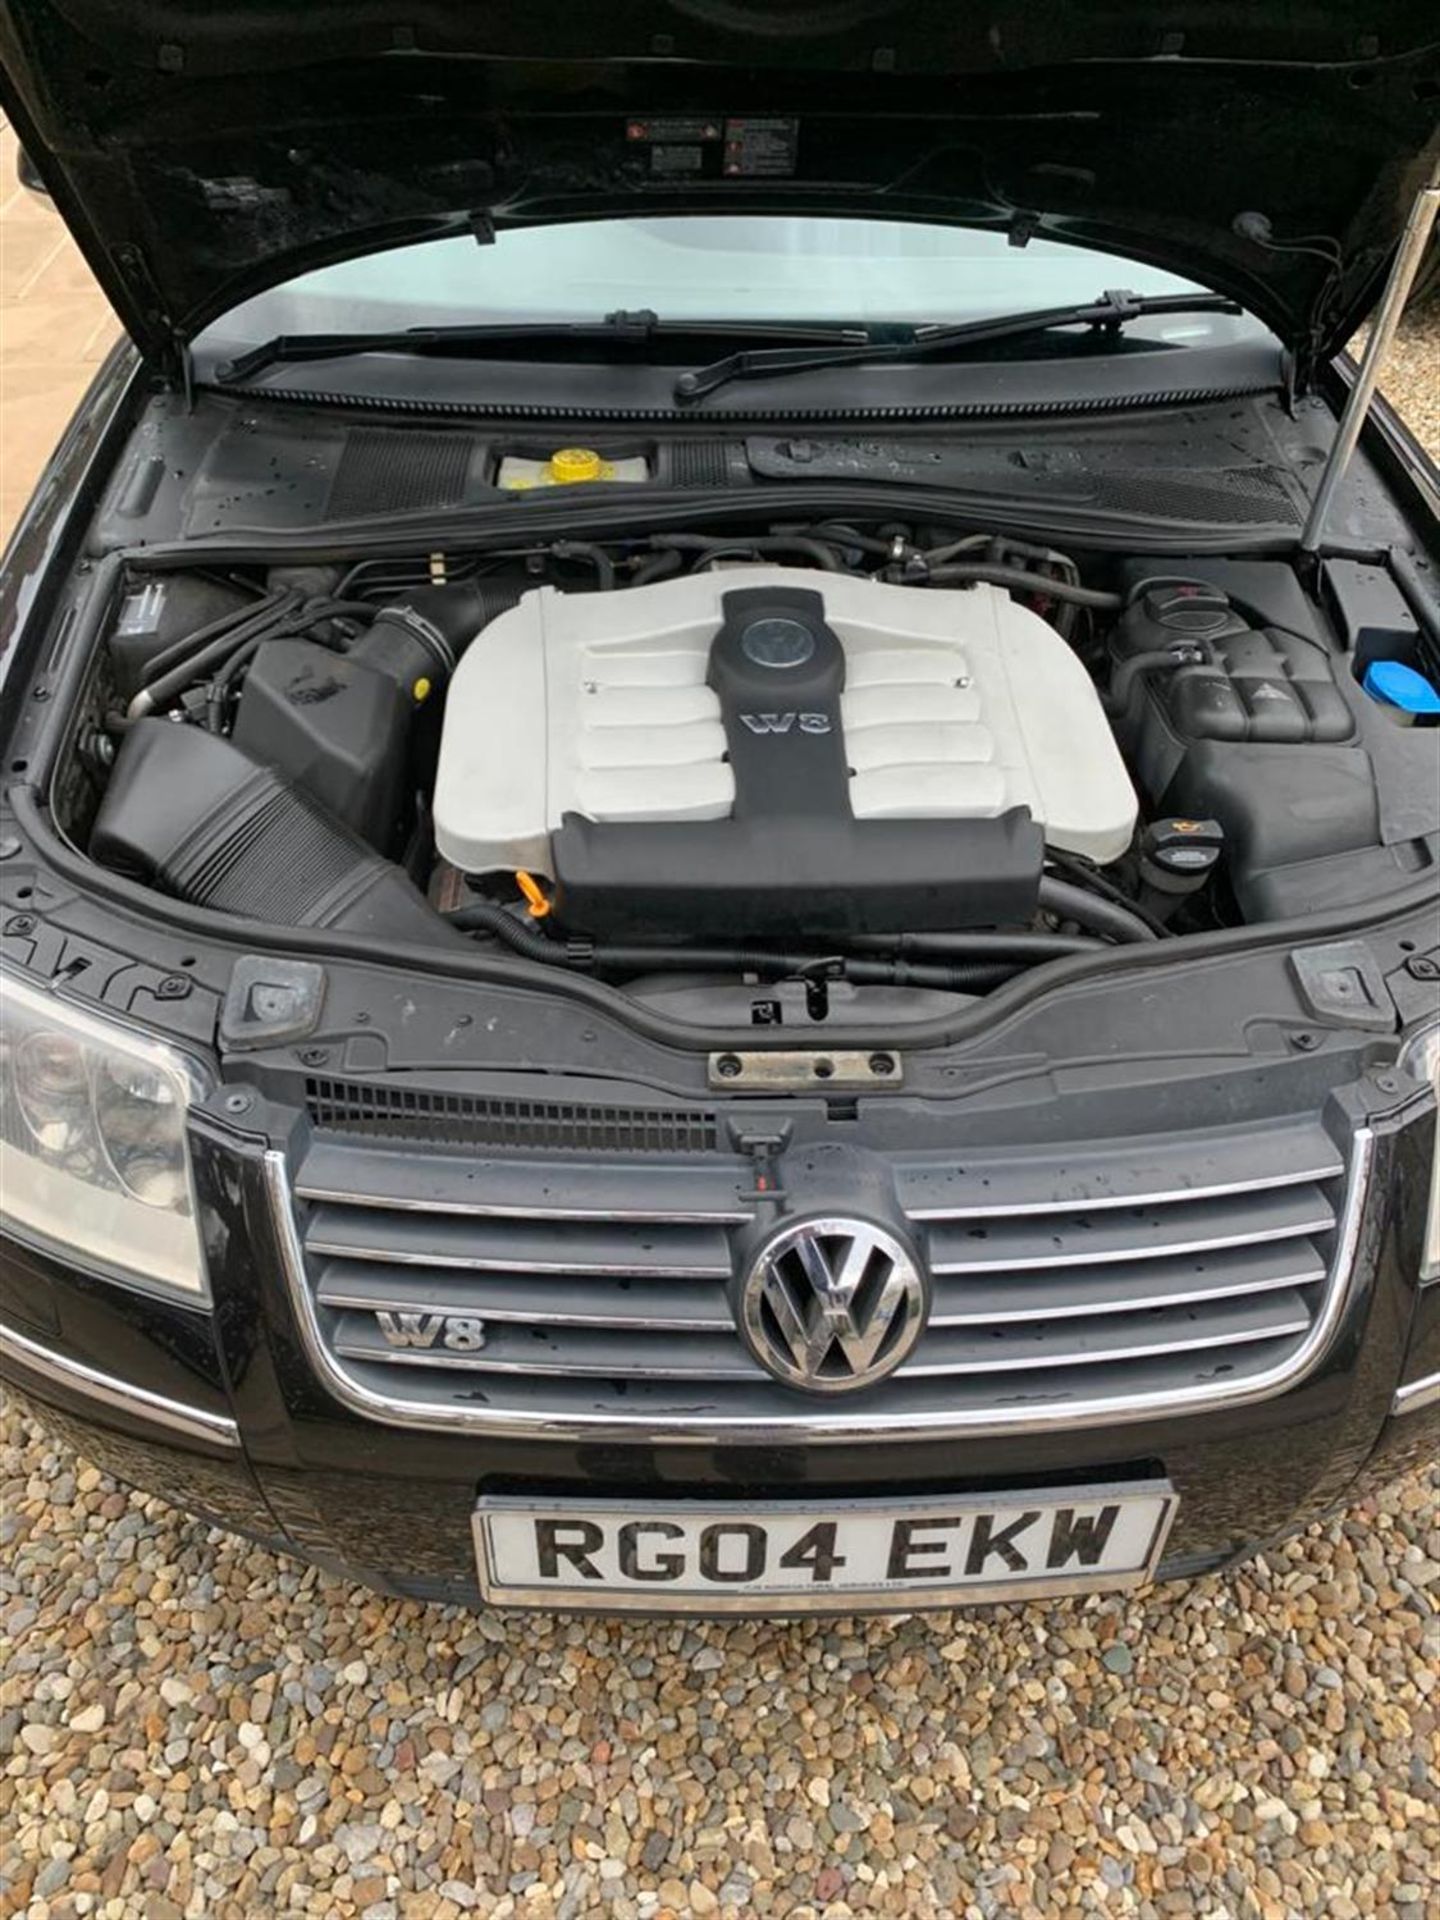 2004 Volkswagen Passat W8 4Motion - Image 7 of 10